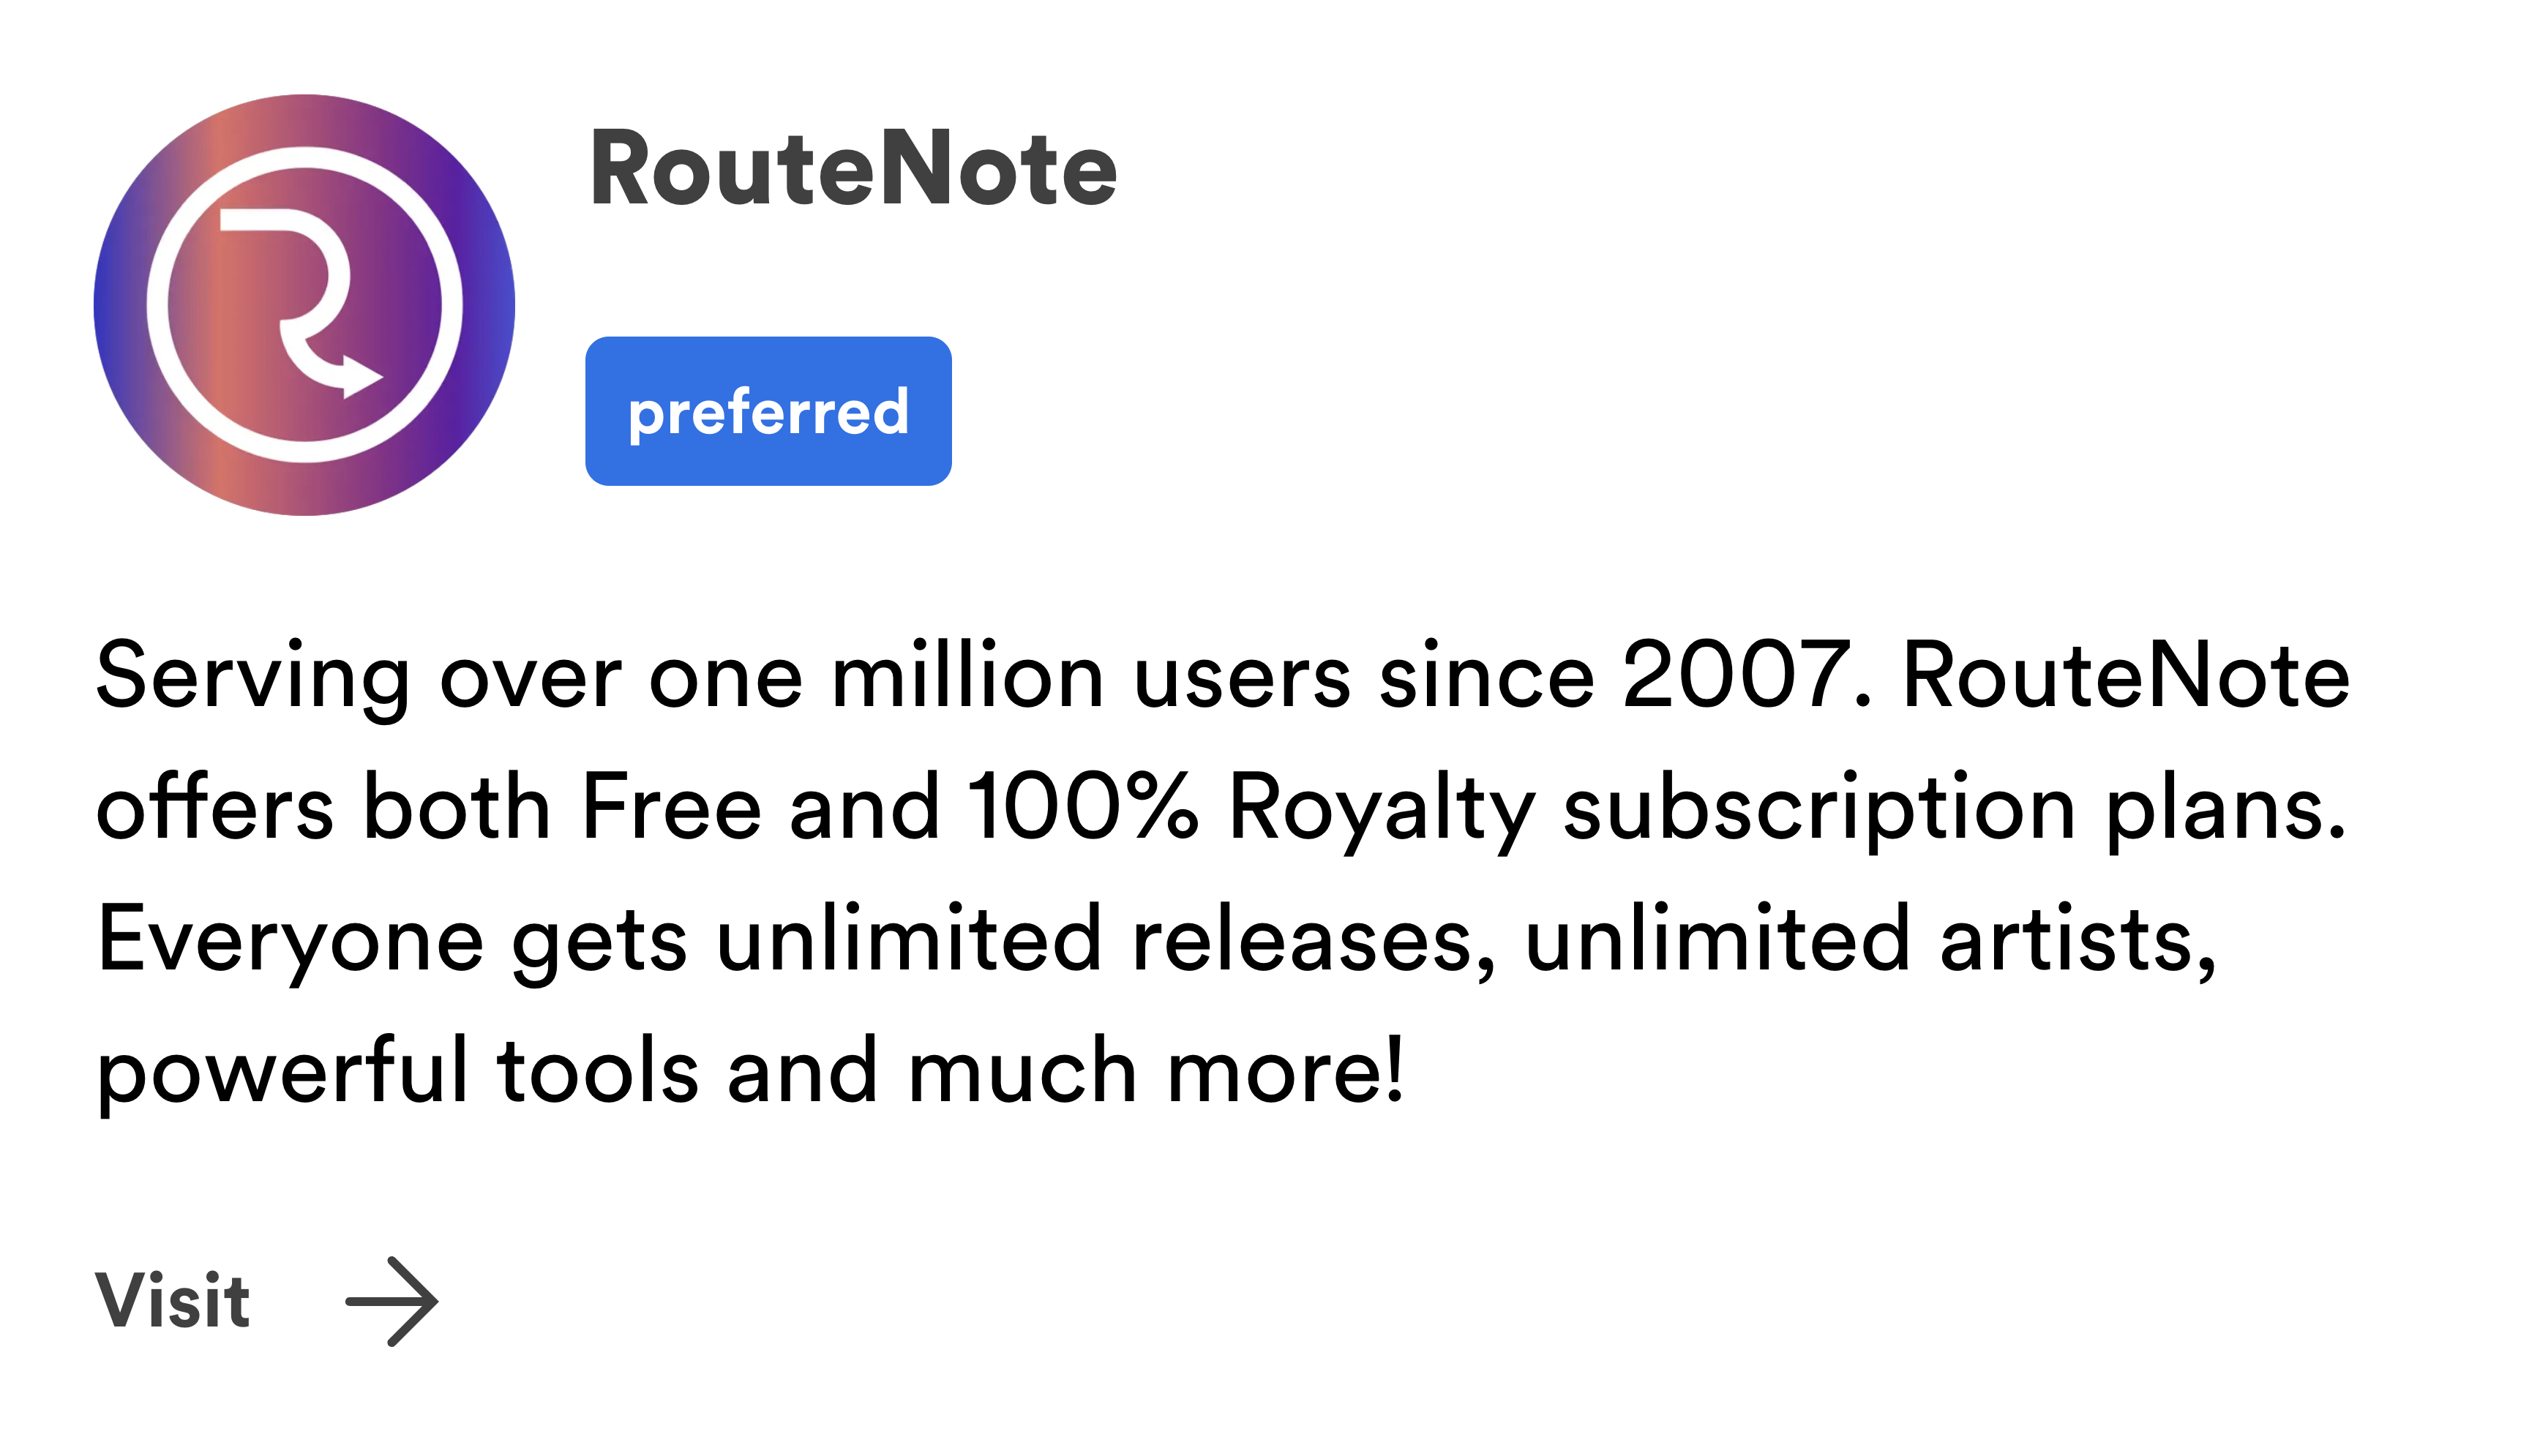 RouteNote is a “preferred” Spotify distributor